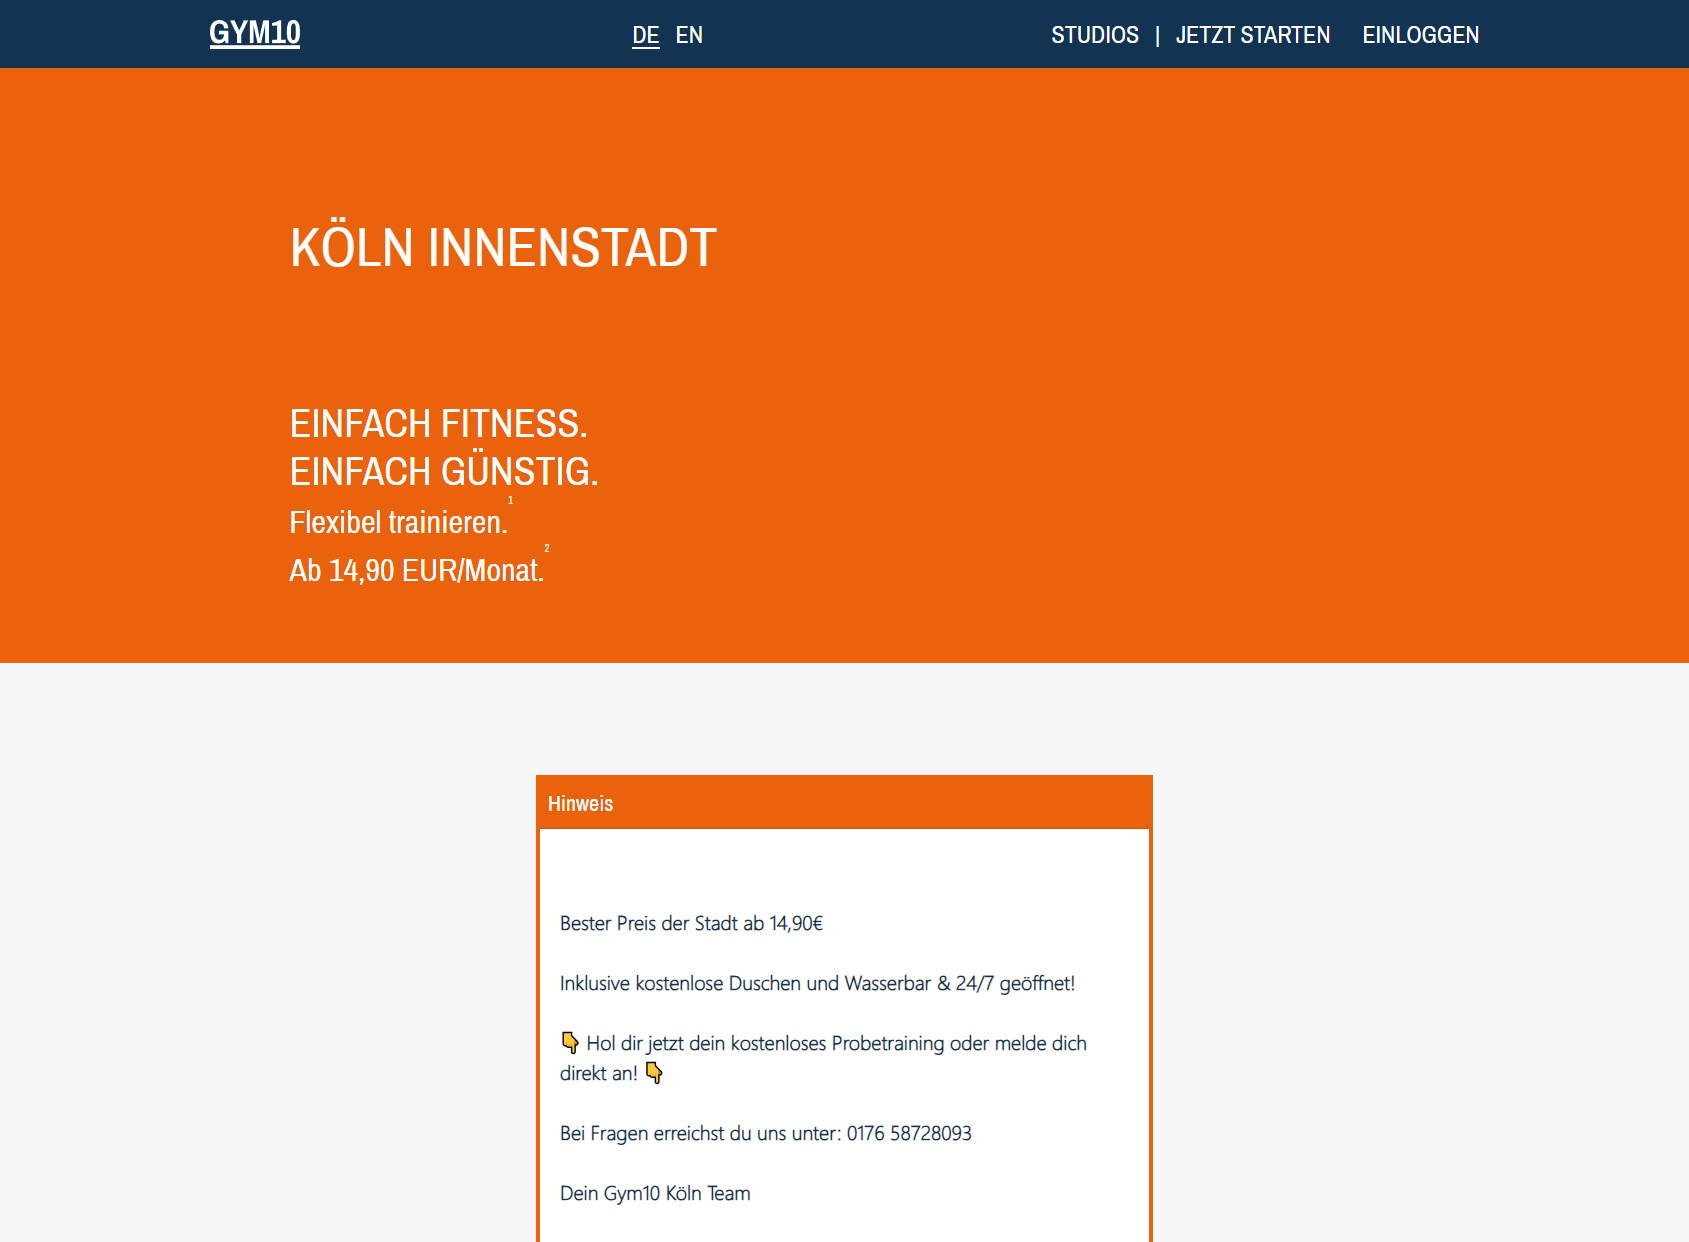 GYM10 Fitness Köln Innenstadt - Fitness ab 14,90 EUR/Monat